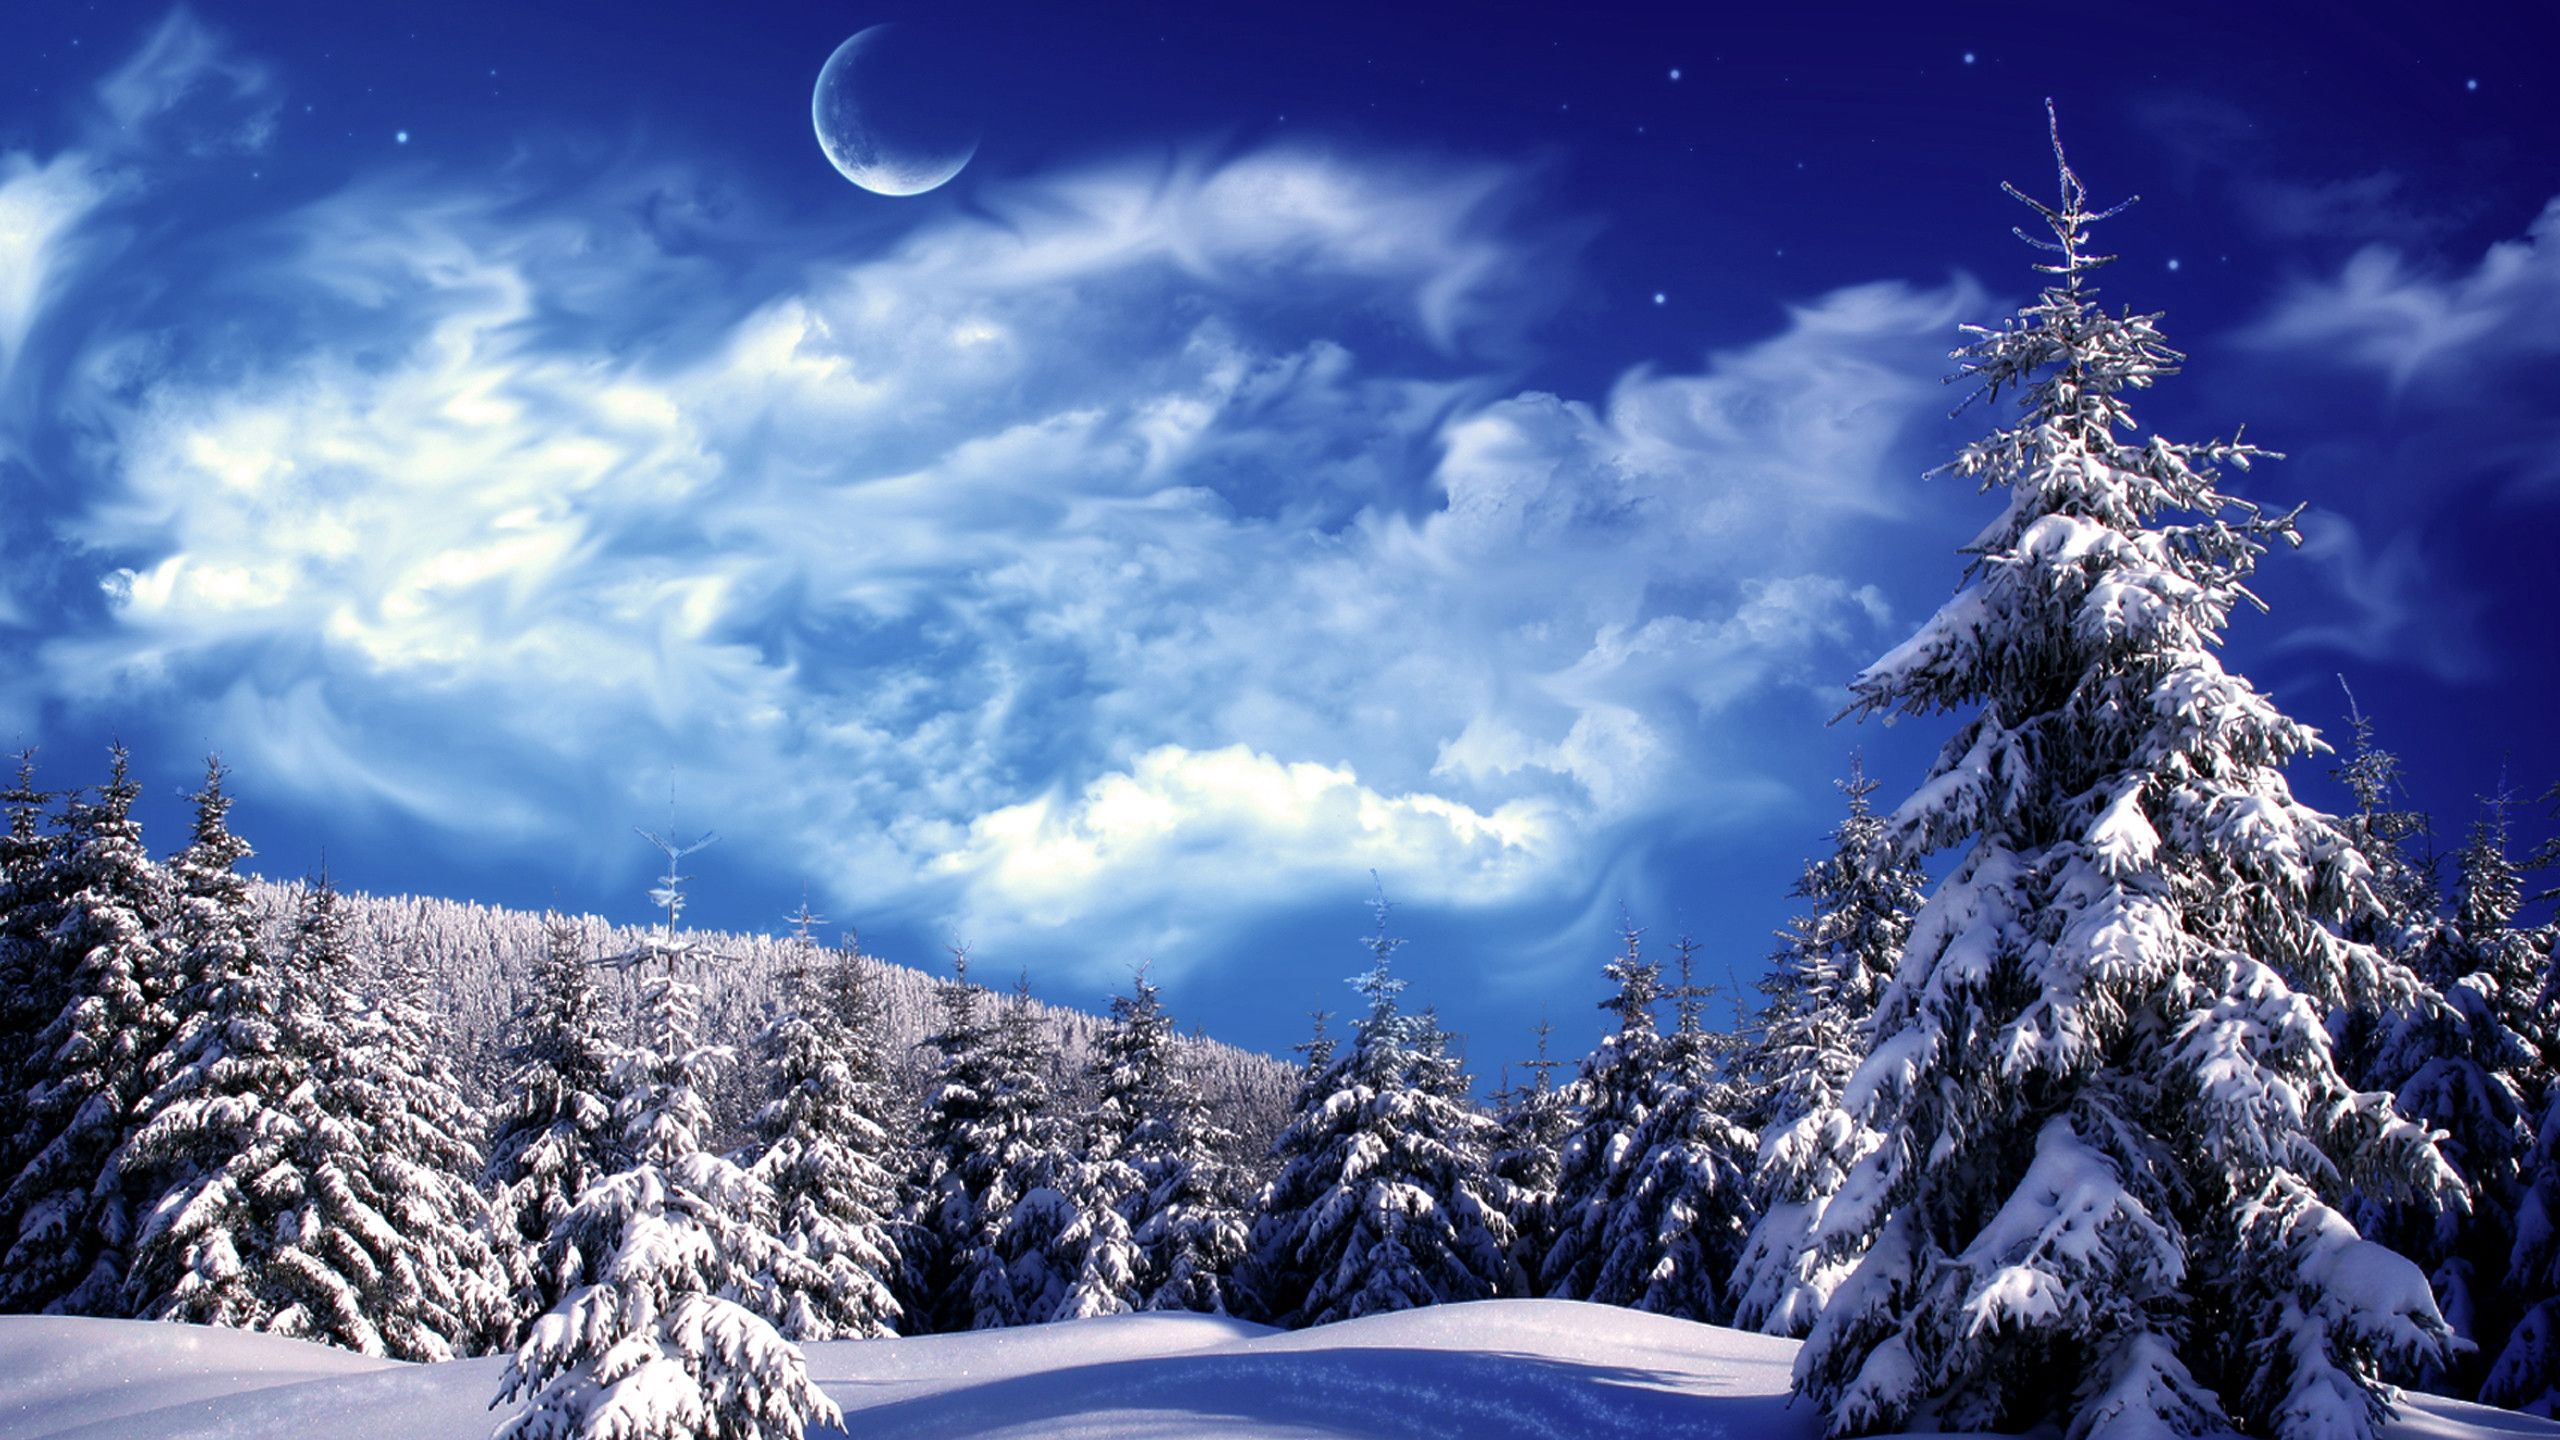 Christmas Winter Scenes, iPhone, Desktop HD Background / Wallpaper (1080p, 4k) (2560x1440) (2021)